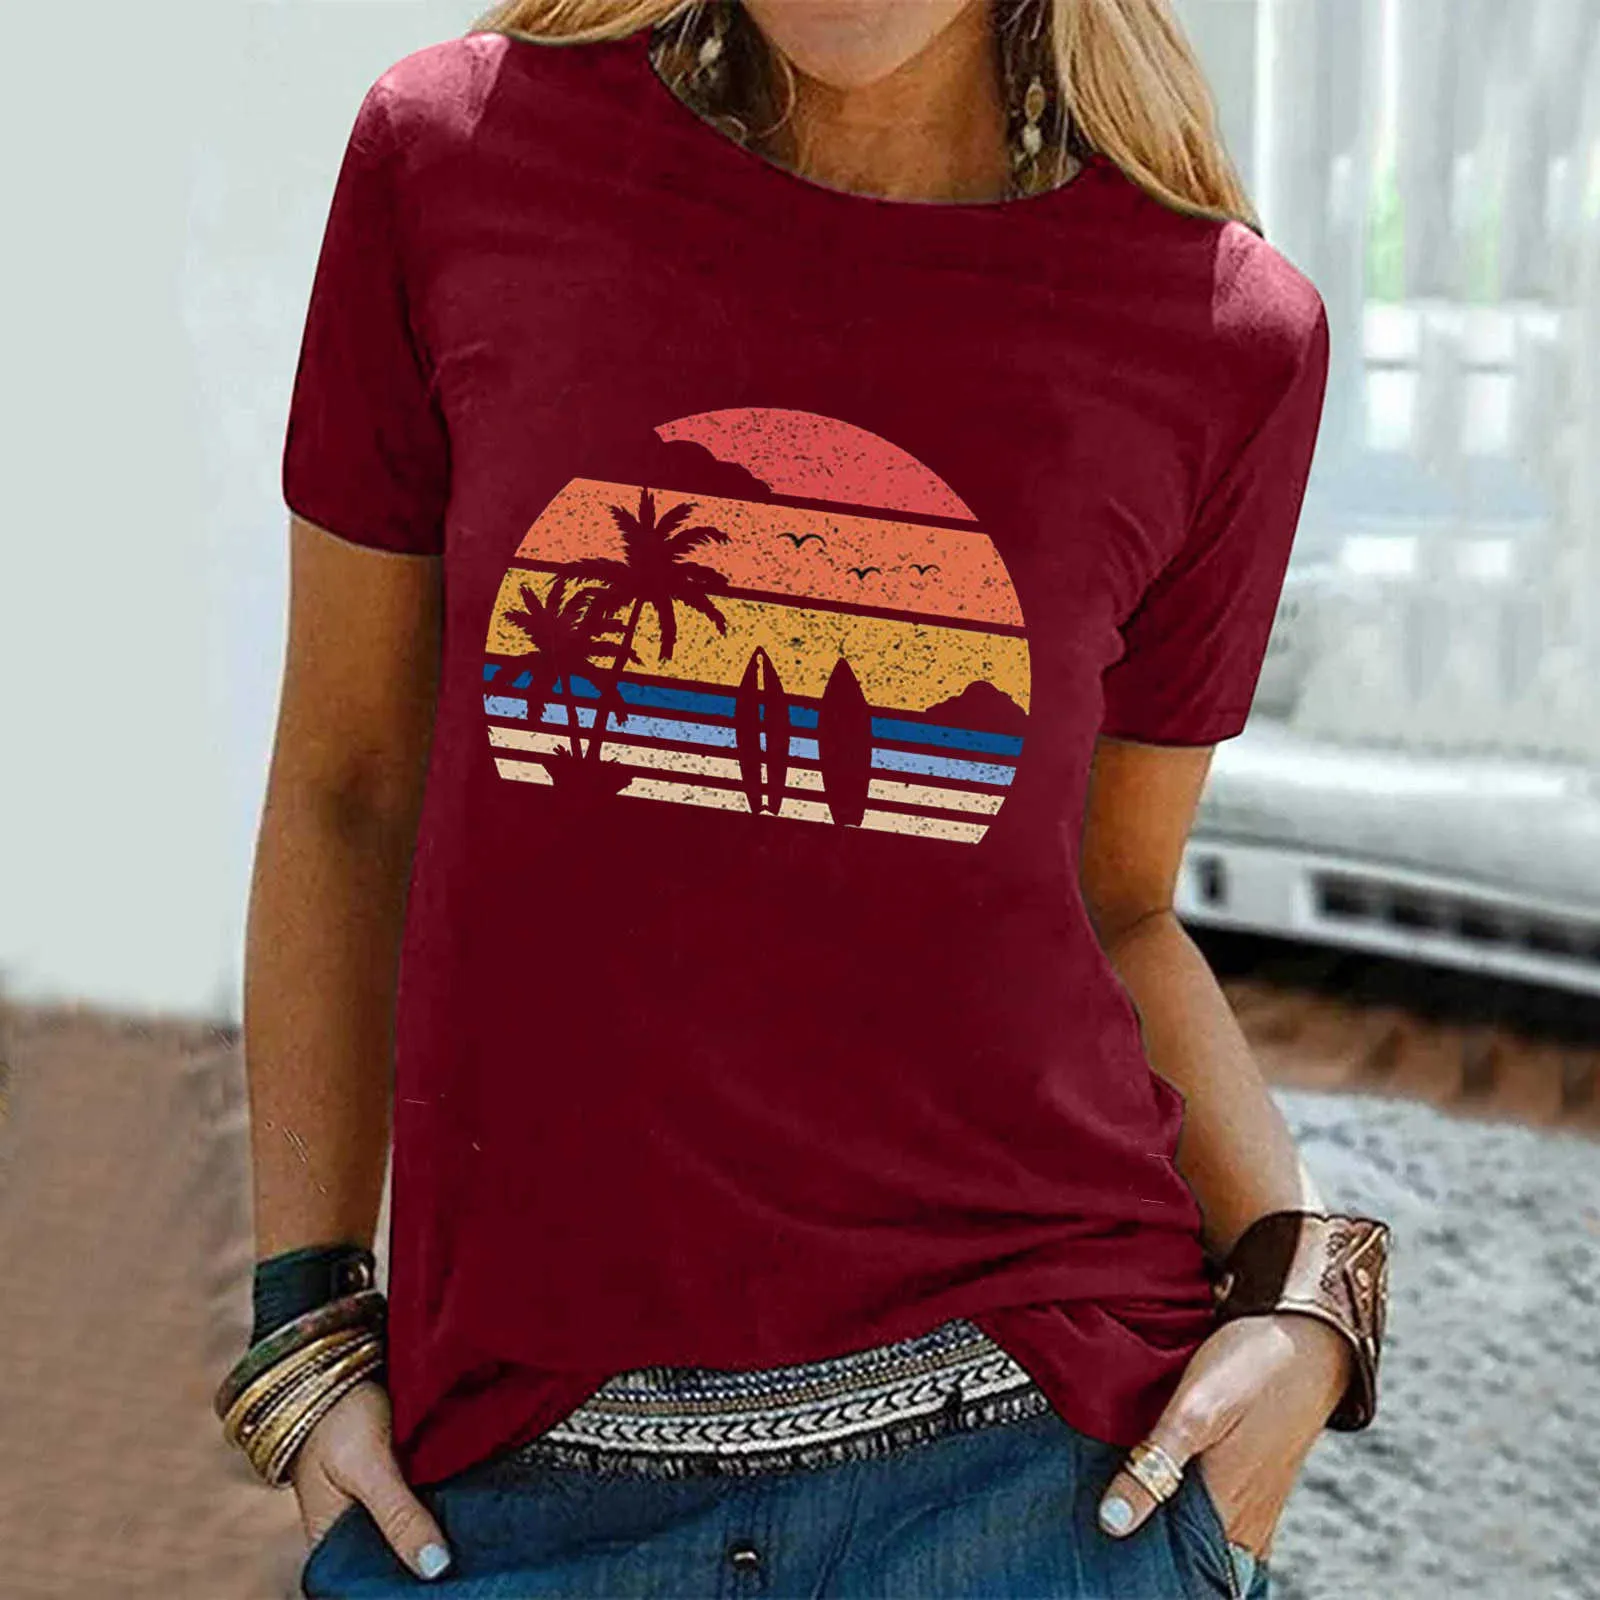 40 # Yaz Sörf Plaj Baskılı Tişörtleri Kadınlar Kısa Kollu Üst Tee T Shirt Kadınlar Için Artı Boyutu Casual Streetwear T-Shirt X0628